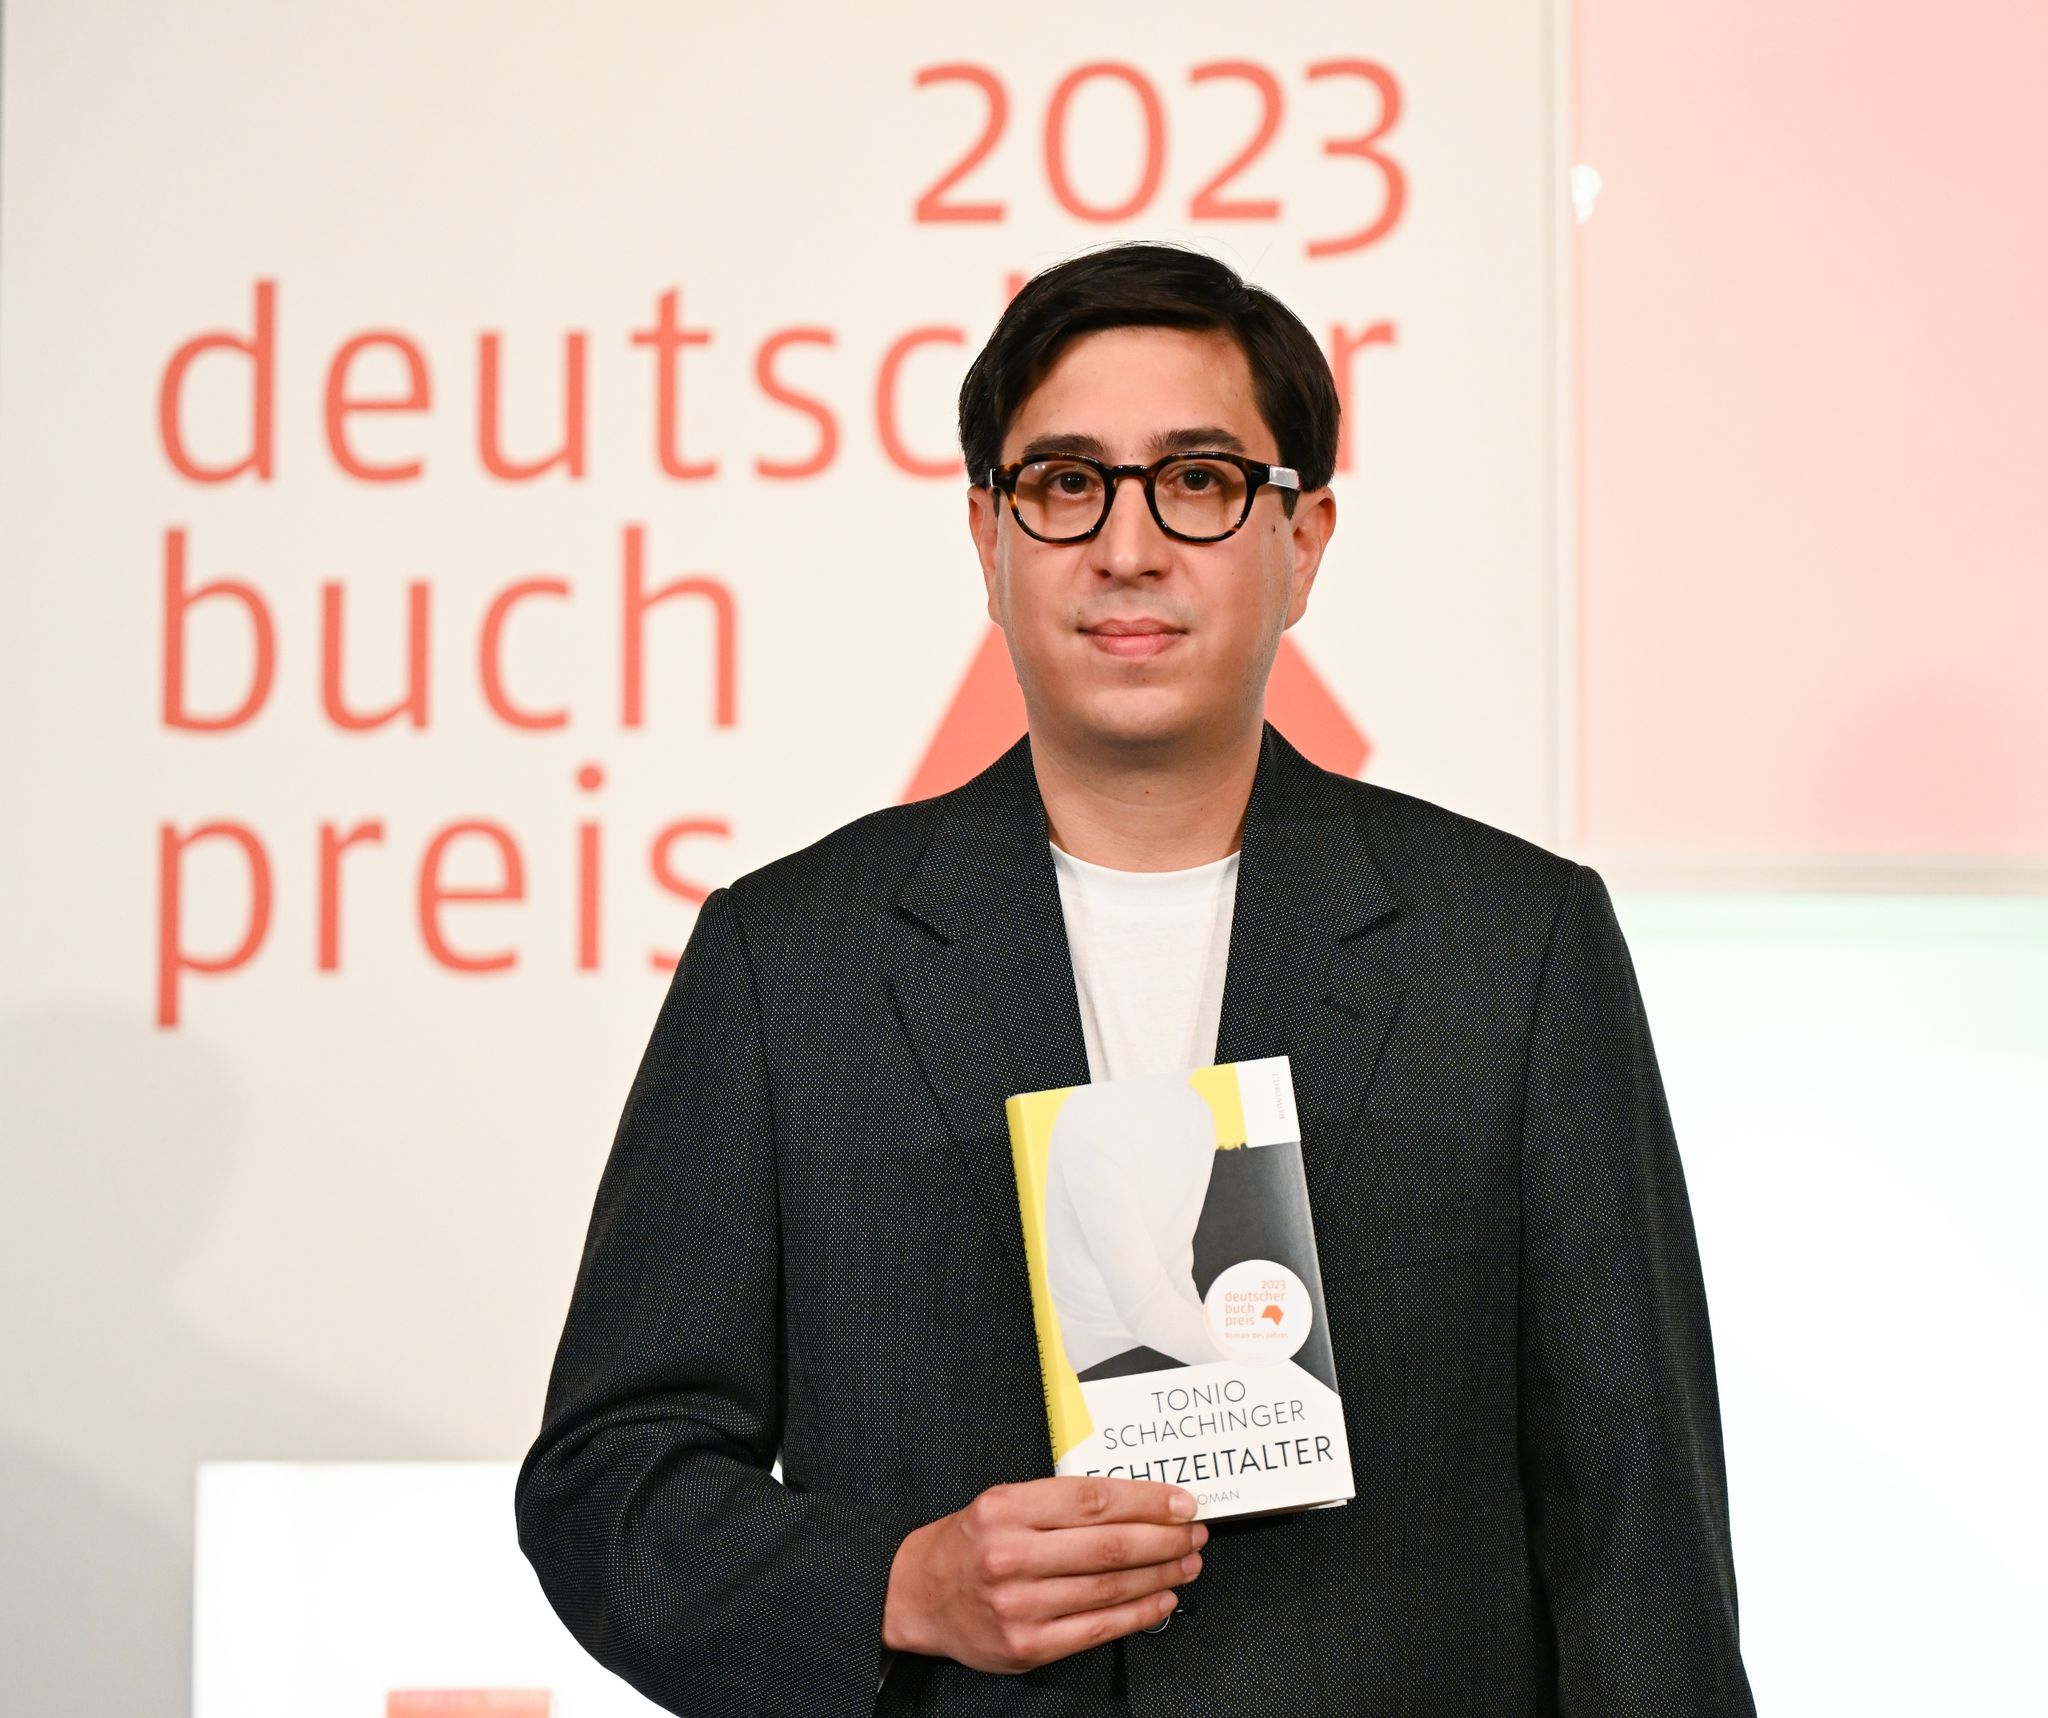 Der österreichische Autor Tonio Schachinger erhält den Deutschen Buchpreis 2023 für seinen Roman «Endzeitalter».